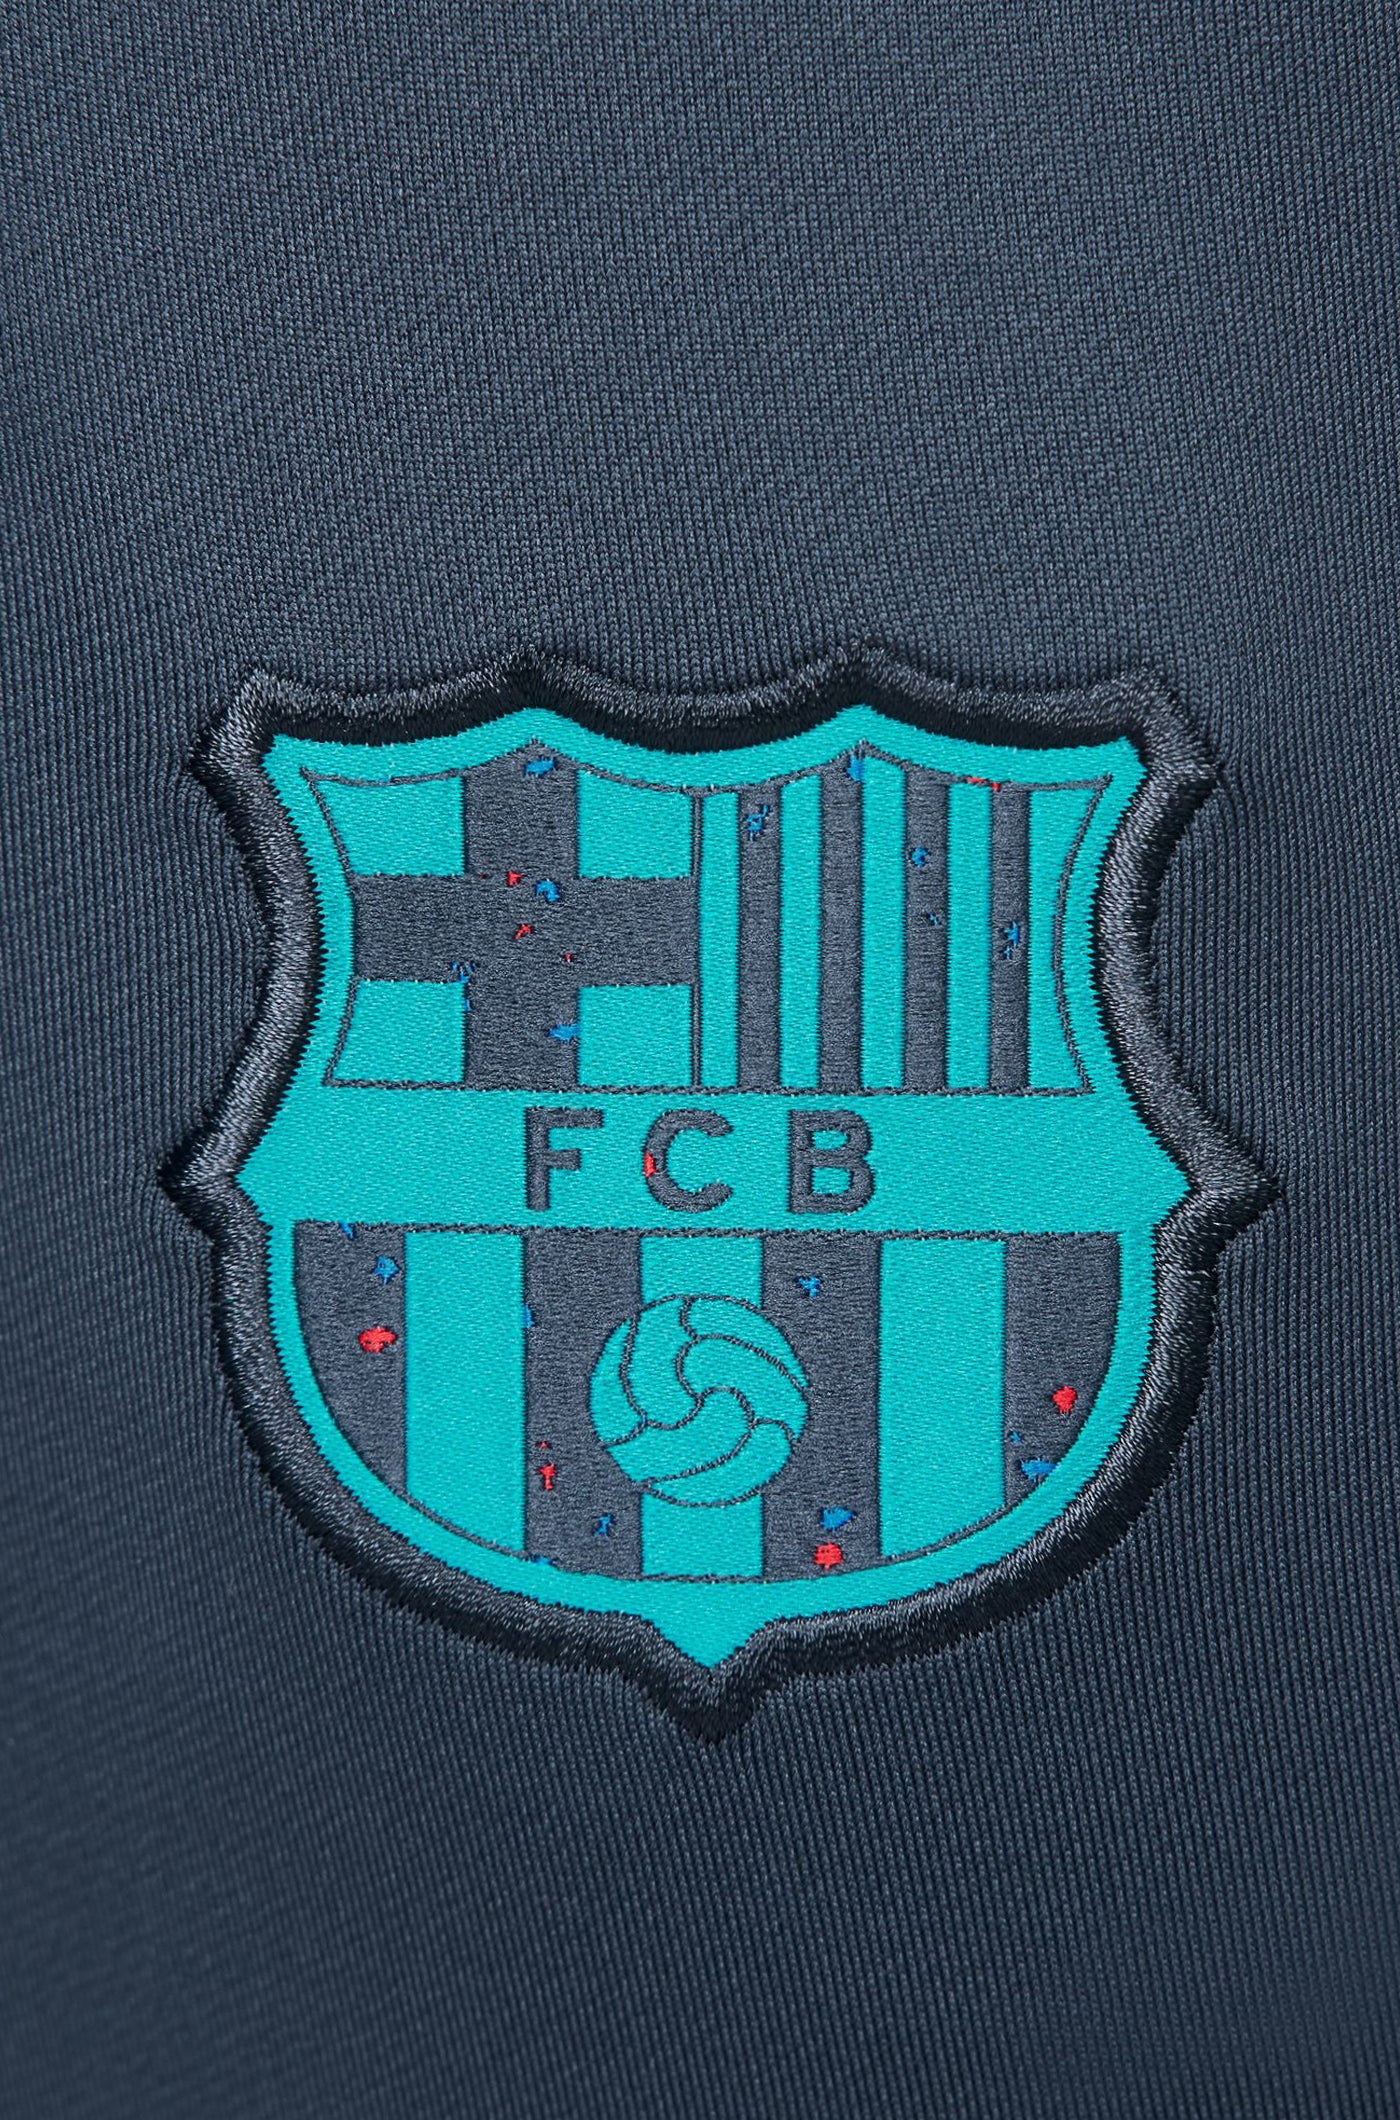 Pantalon Entraînement FC Barcelone 23/24 - Femme